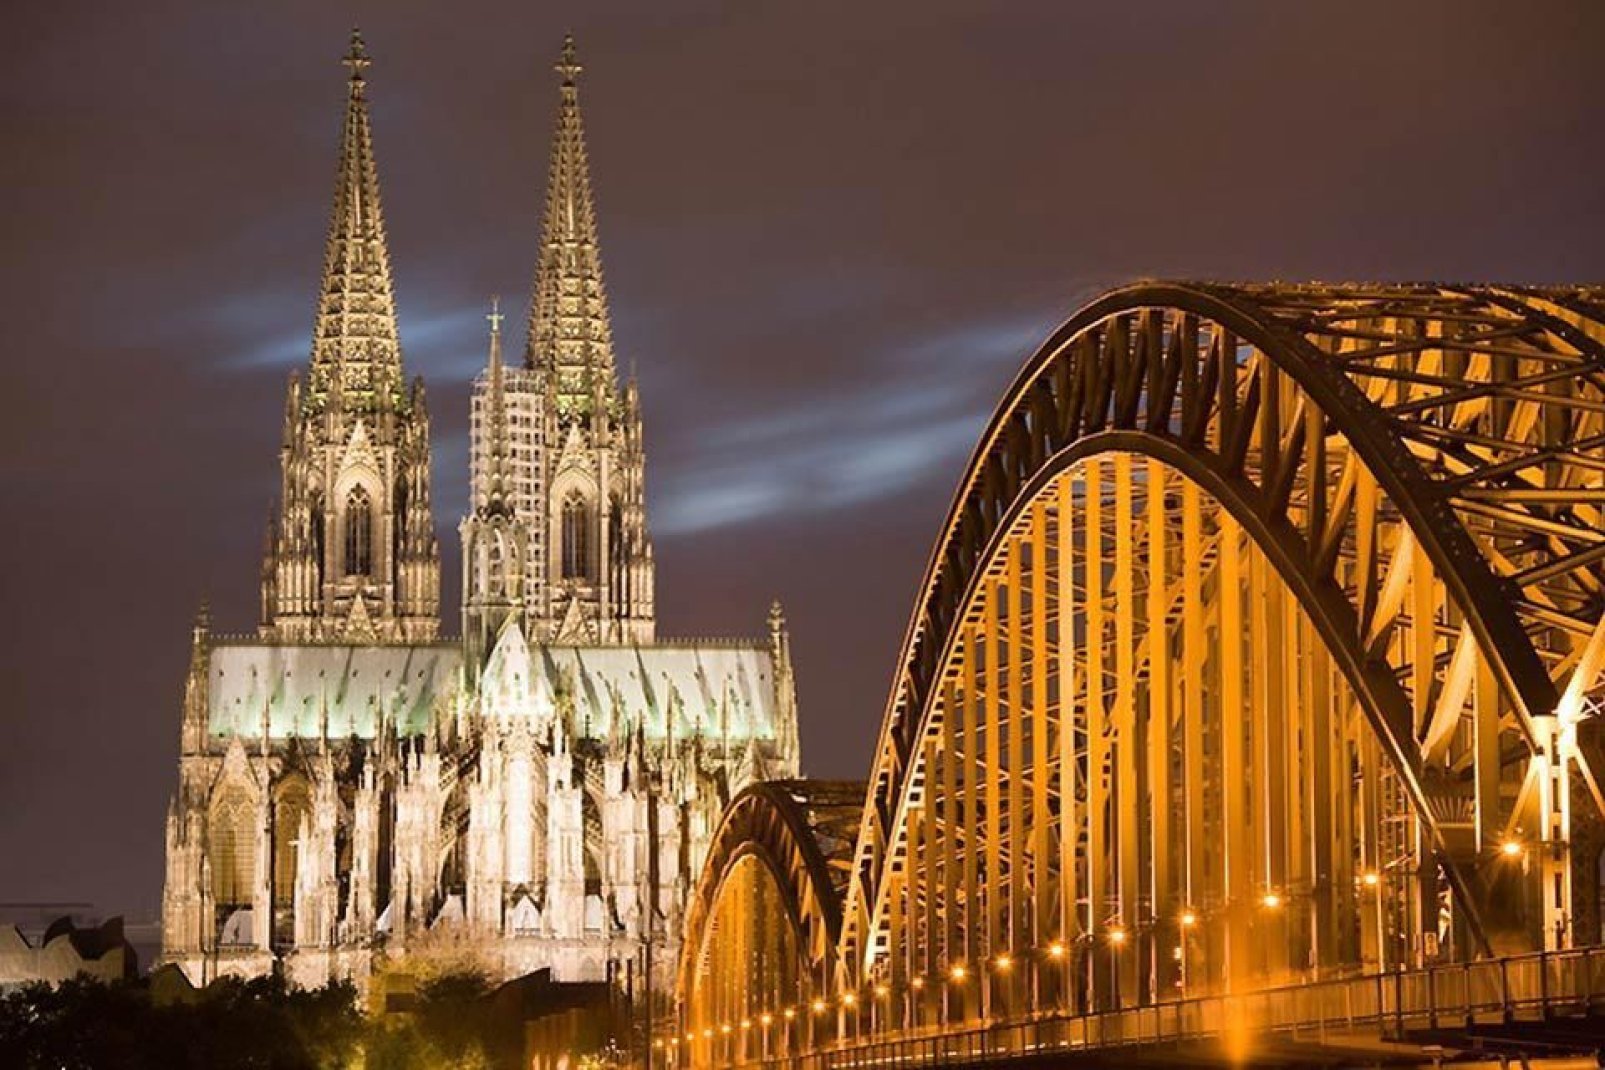 Der Kölner Dom und die Deutzer Brücke sind wunderschön erleuchtet während der Nacht.